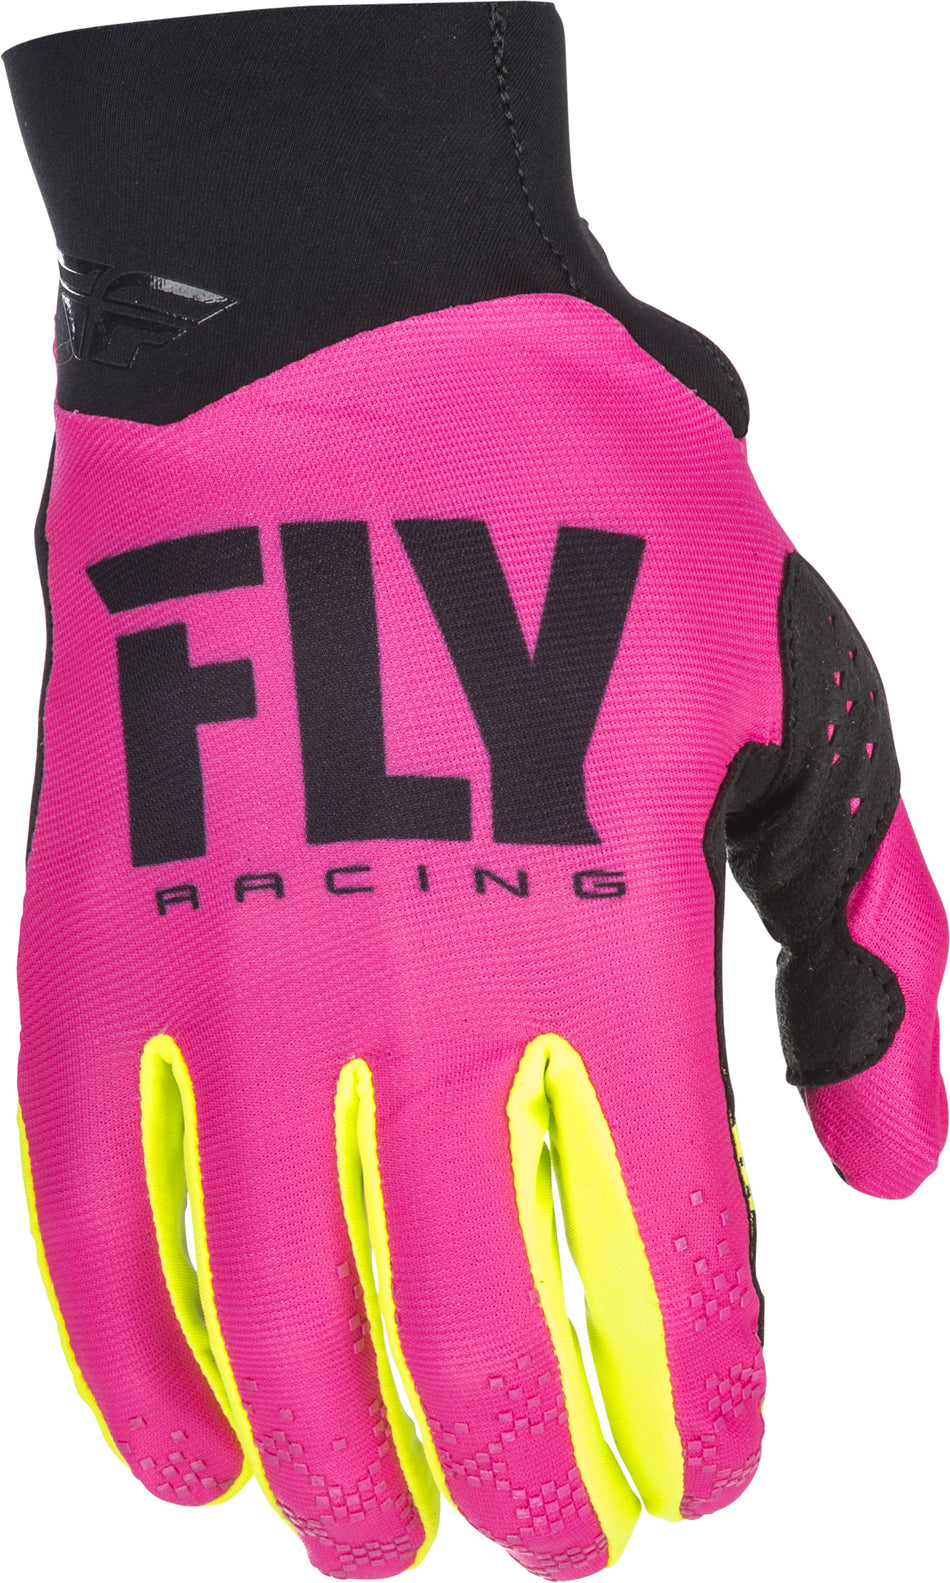 FLY RACING Pro Lite Gloves Neon Pink/Hi-Vis Sz 9 371-81709